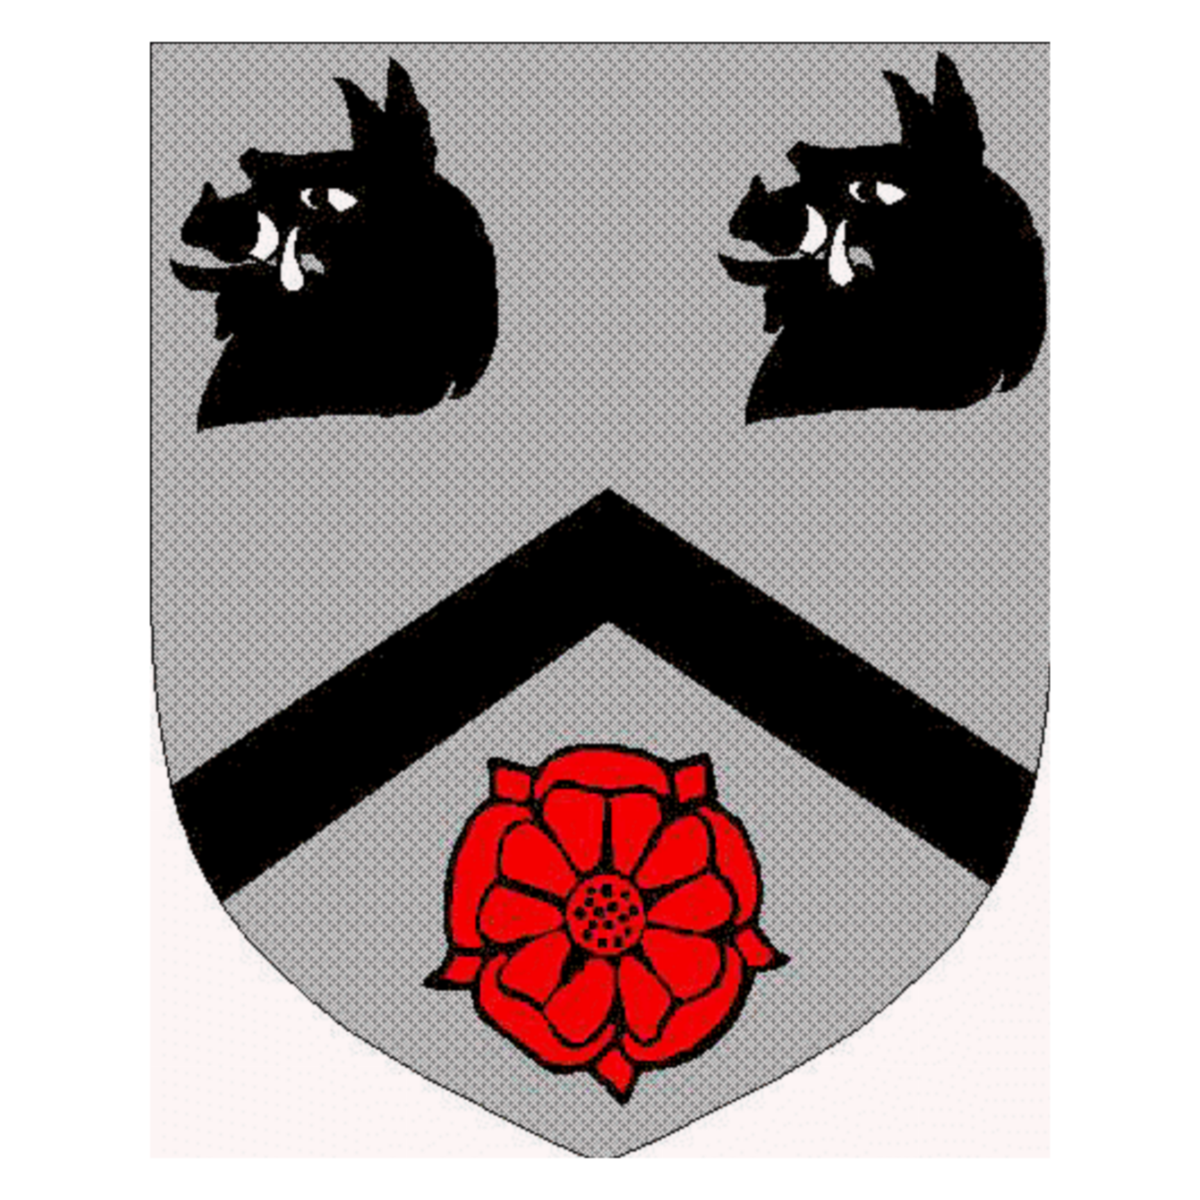 Wappen der Familie Paisley